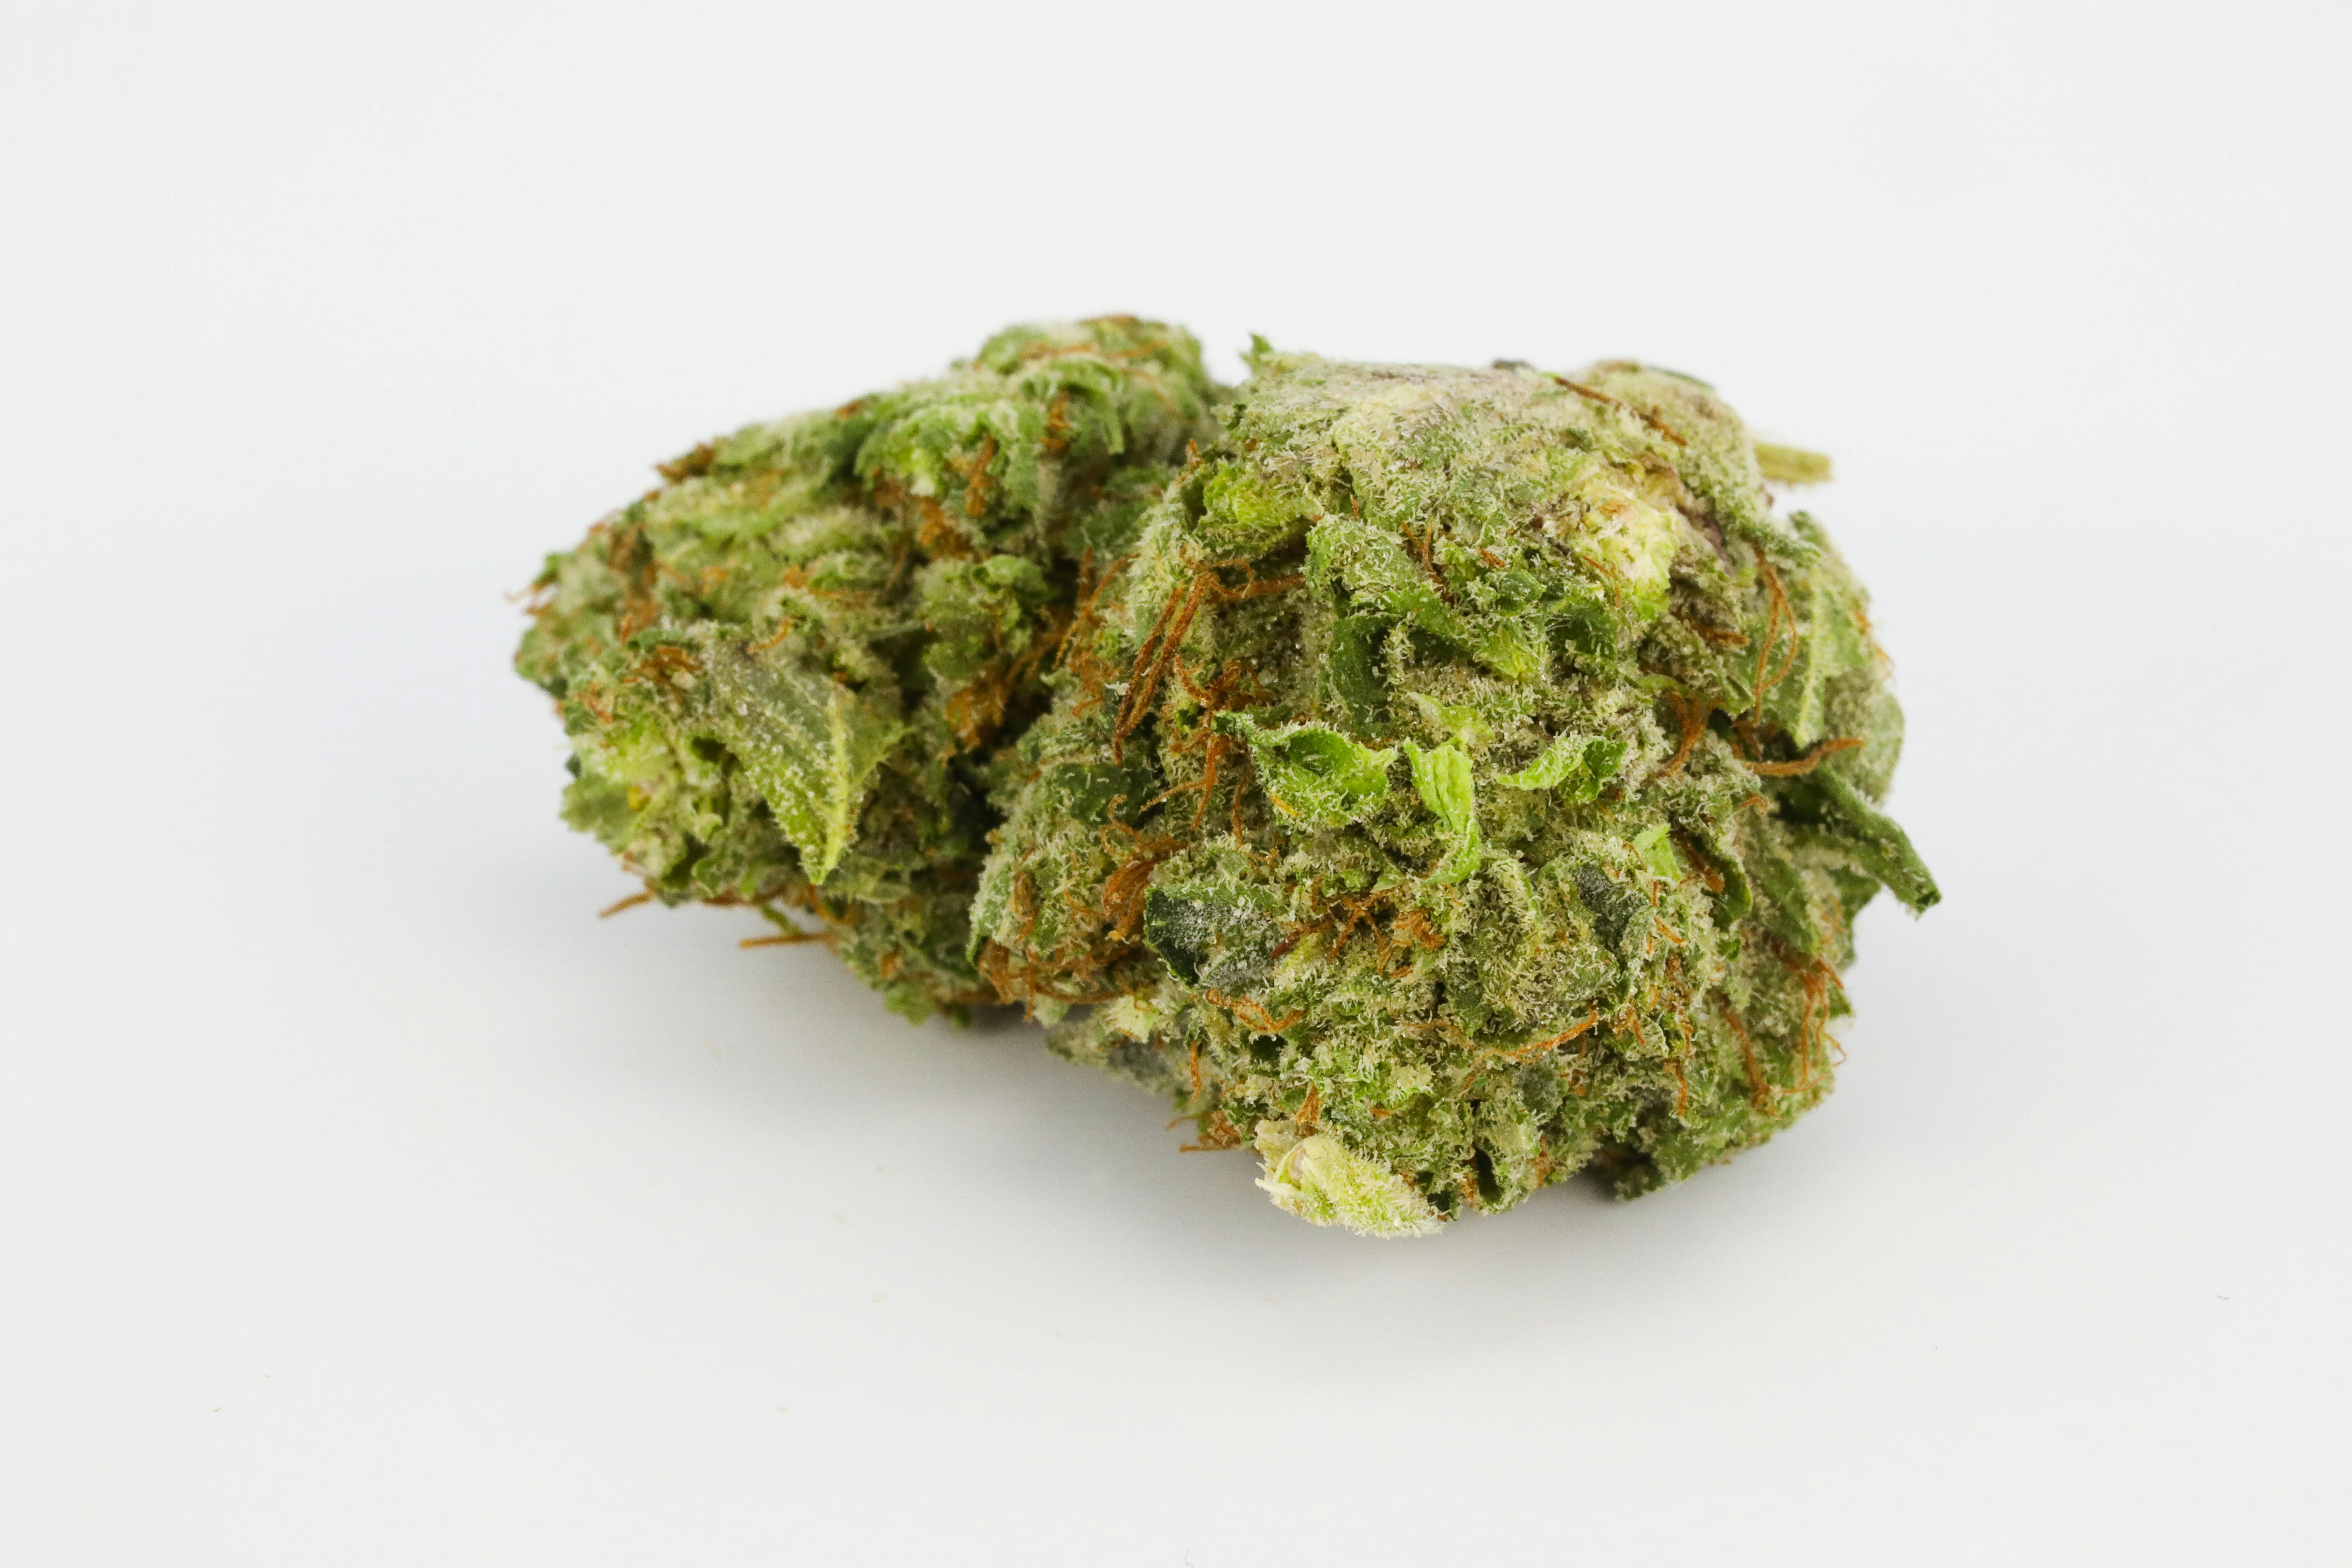 0G8A3214: Tutto quello che dovete sapere sui ceppi di cannabis Landrace